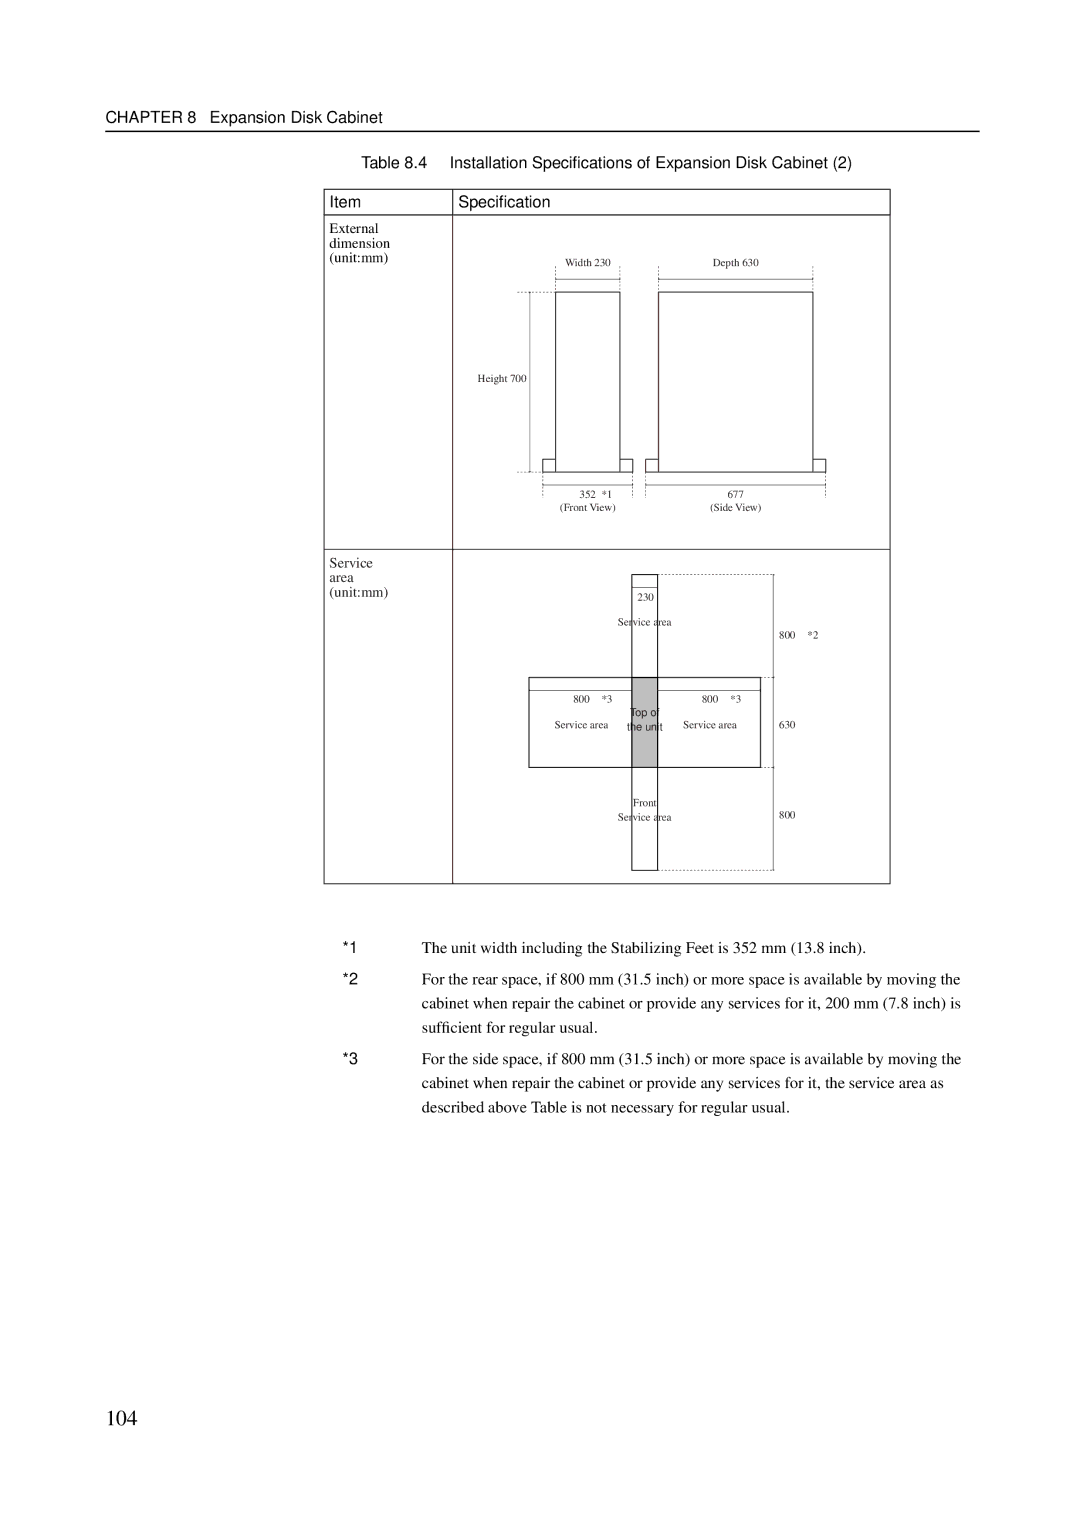 Fujitsu M400R, M600R, M200R, GranPower7000 (GP 7000F), M400A manual 104 